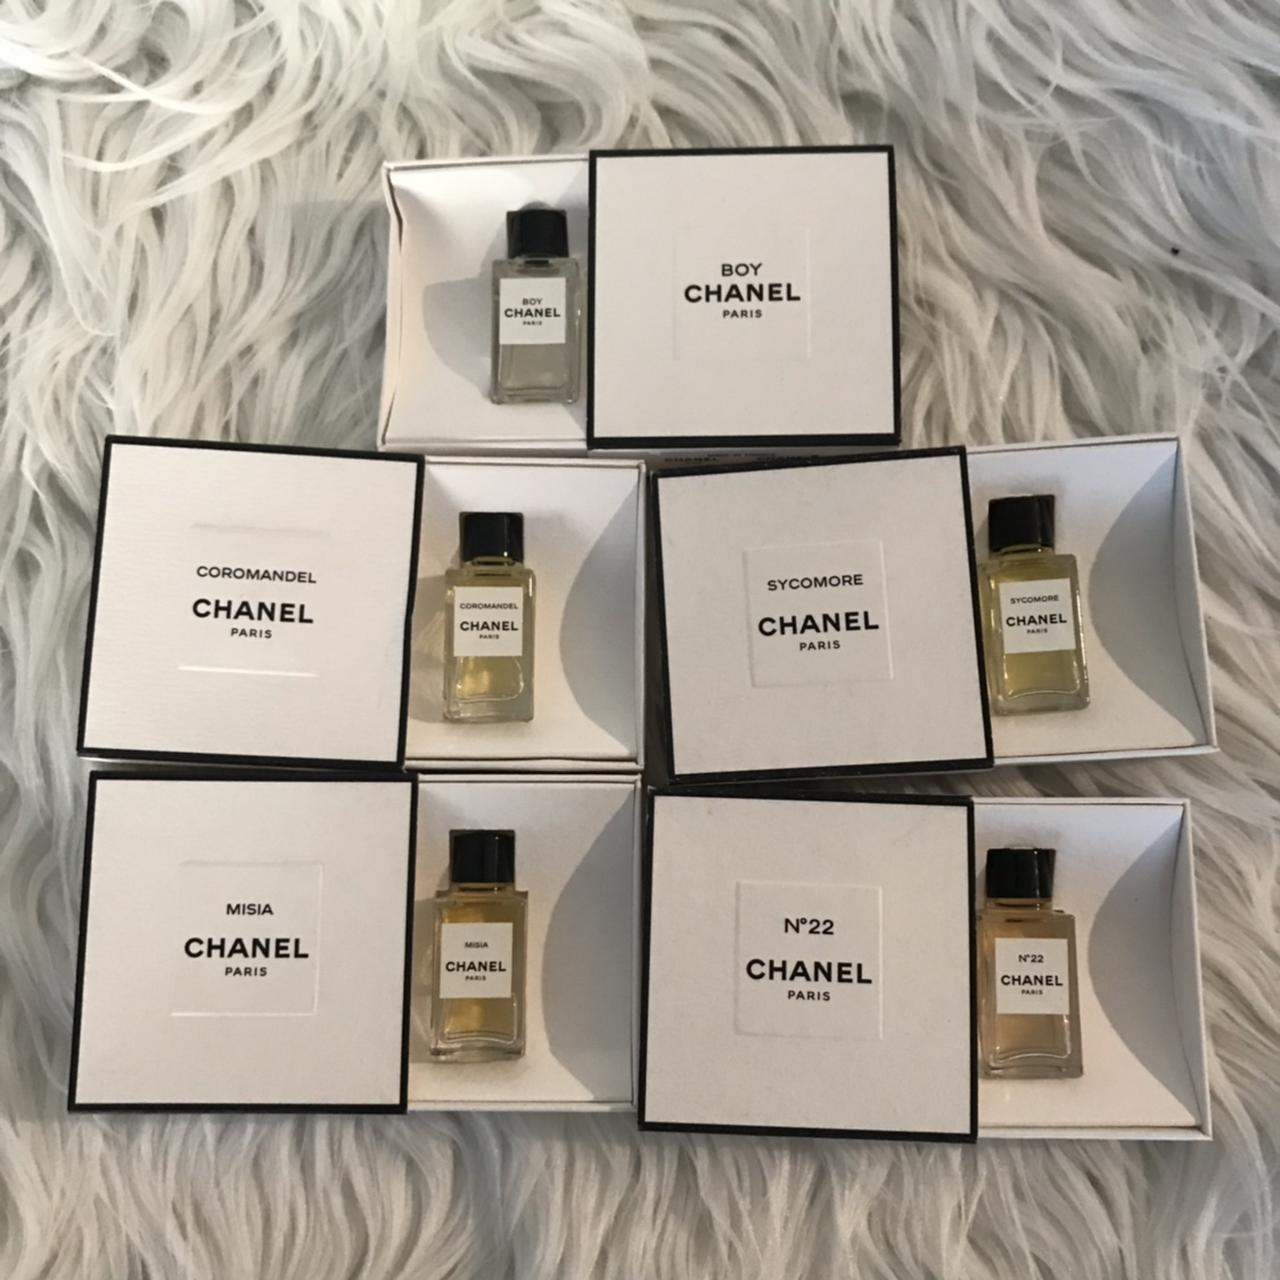 Les Exclusifs de Chanel Edt miniature parfum - Depop